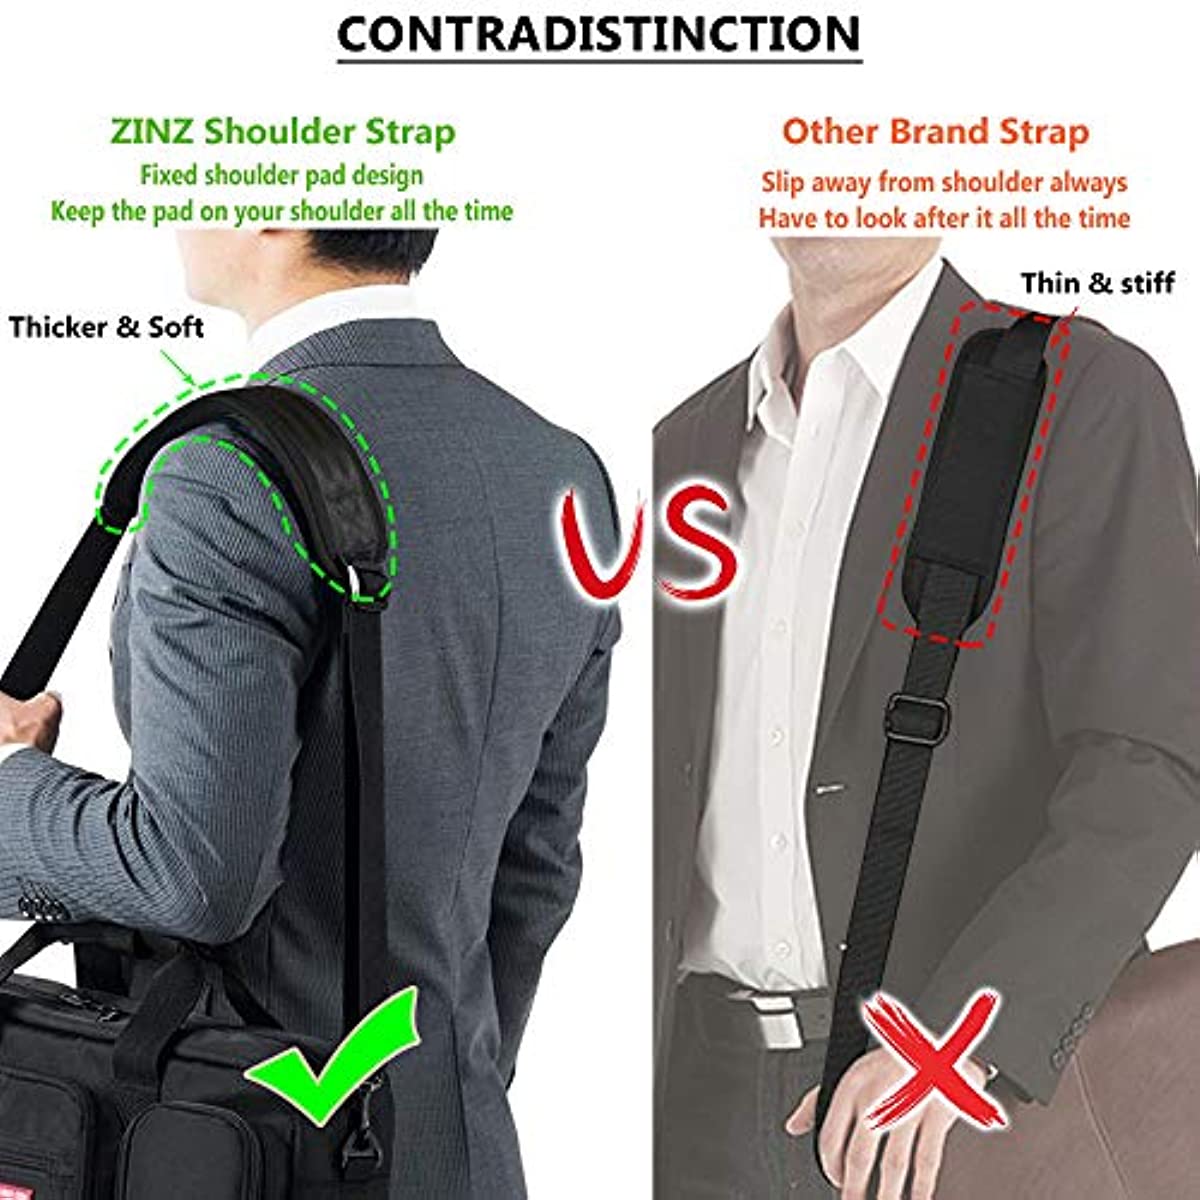 57 Bag Shoulder Strap, ZINZ Padded Adjustable Shoulder Strap Replacement